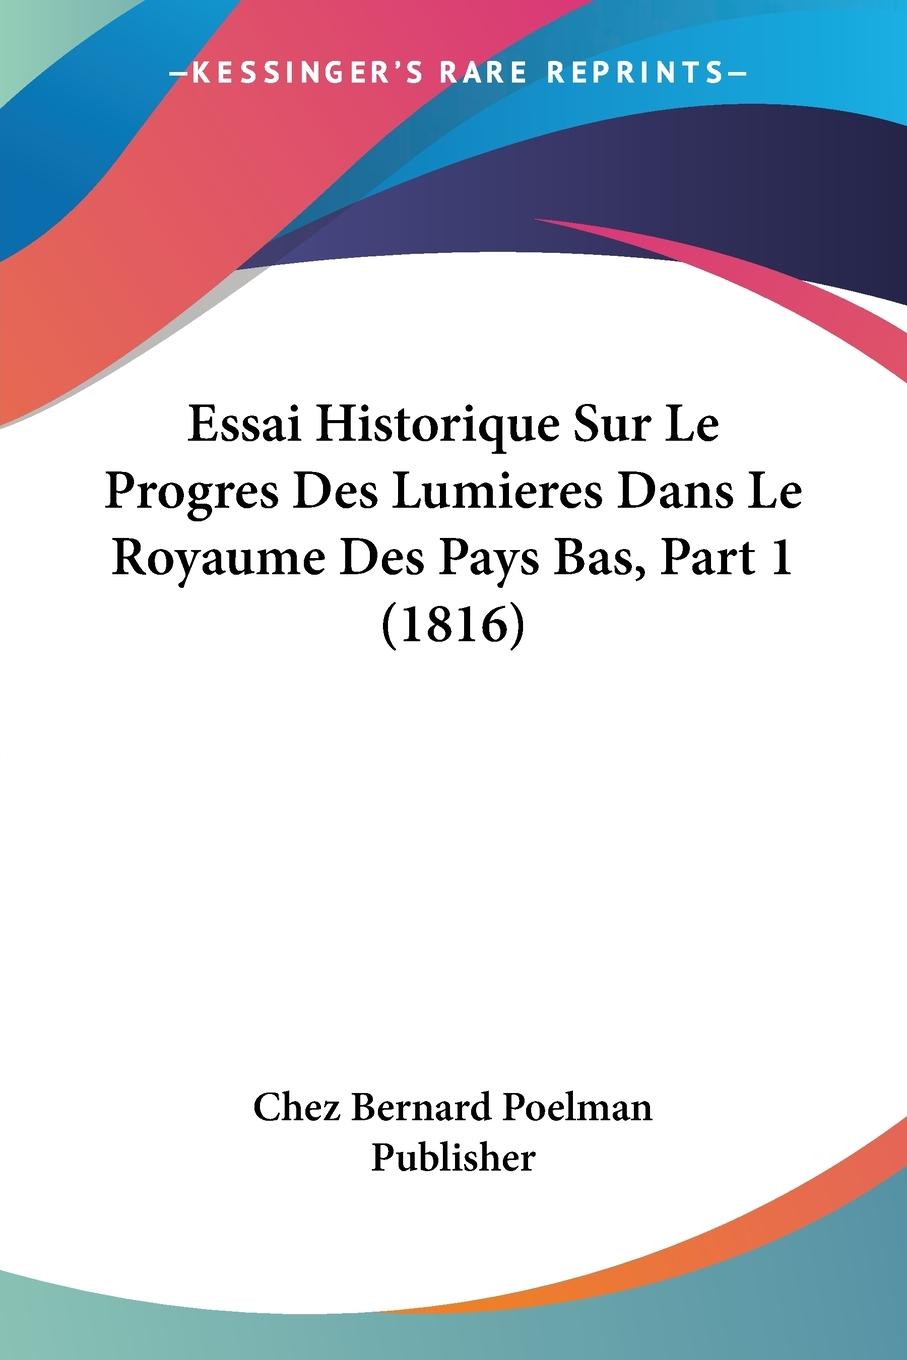 Essai Historique Sur Le Progres Des Lumieres Dans Le Royaume Des Pays Bas, Part 1 (1816) - Chez Bernard Poelman Publisher